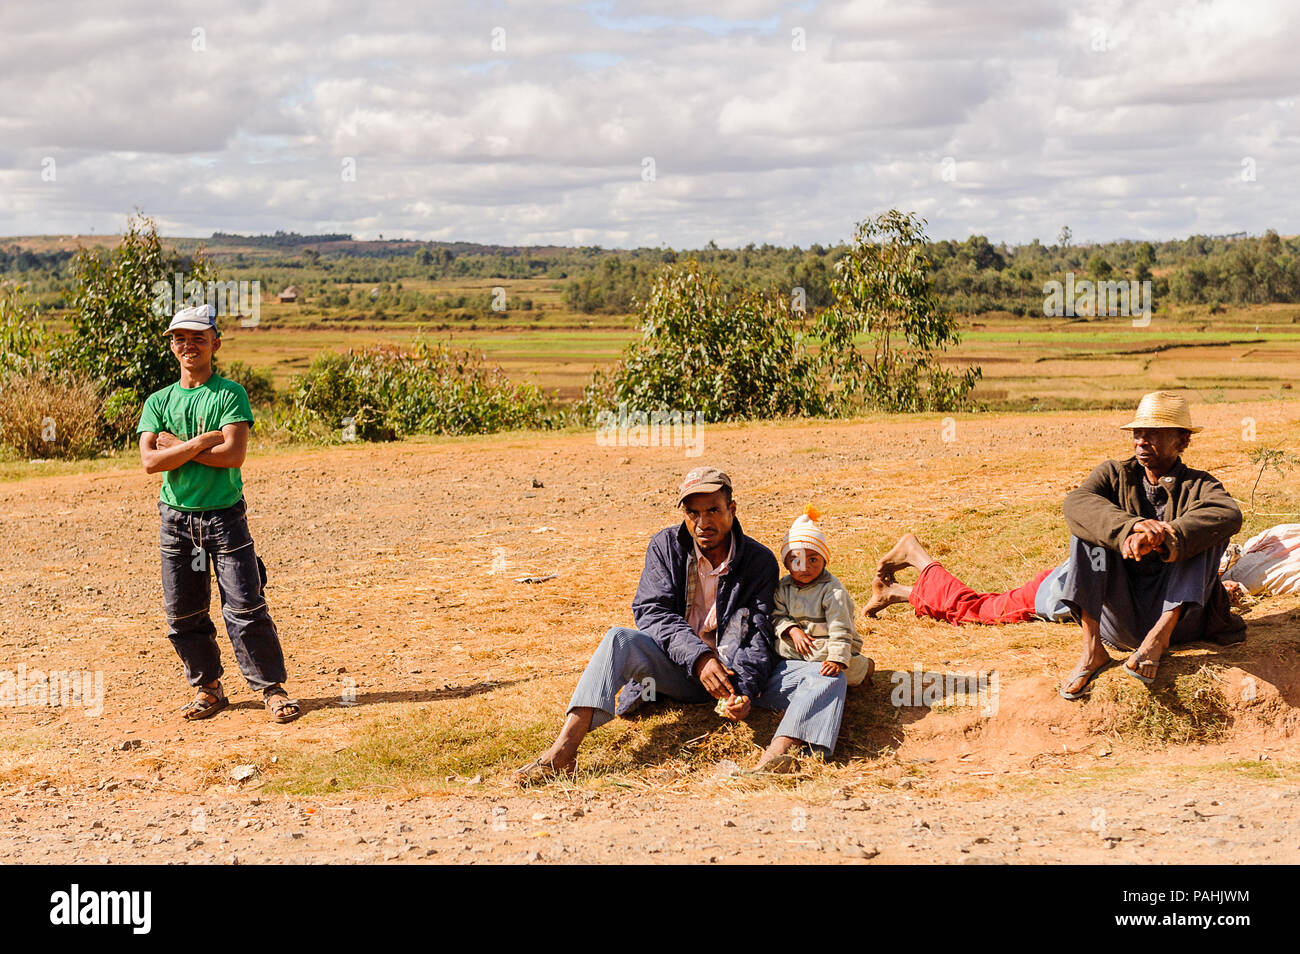 ANTANANARIVO, Madagaskar - 29. JUNI 2011: Unbekannter Madagaskar Leute sitzen auf dem Boden. Menschen in Madagaskar Leiden der Armut aufgrund der langsamen Dev Stockfoto